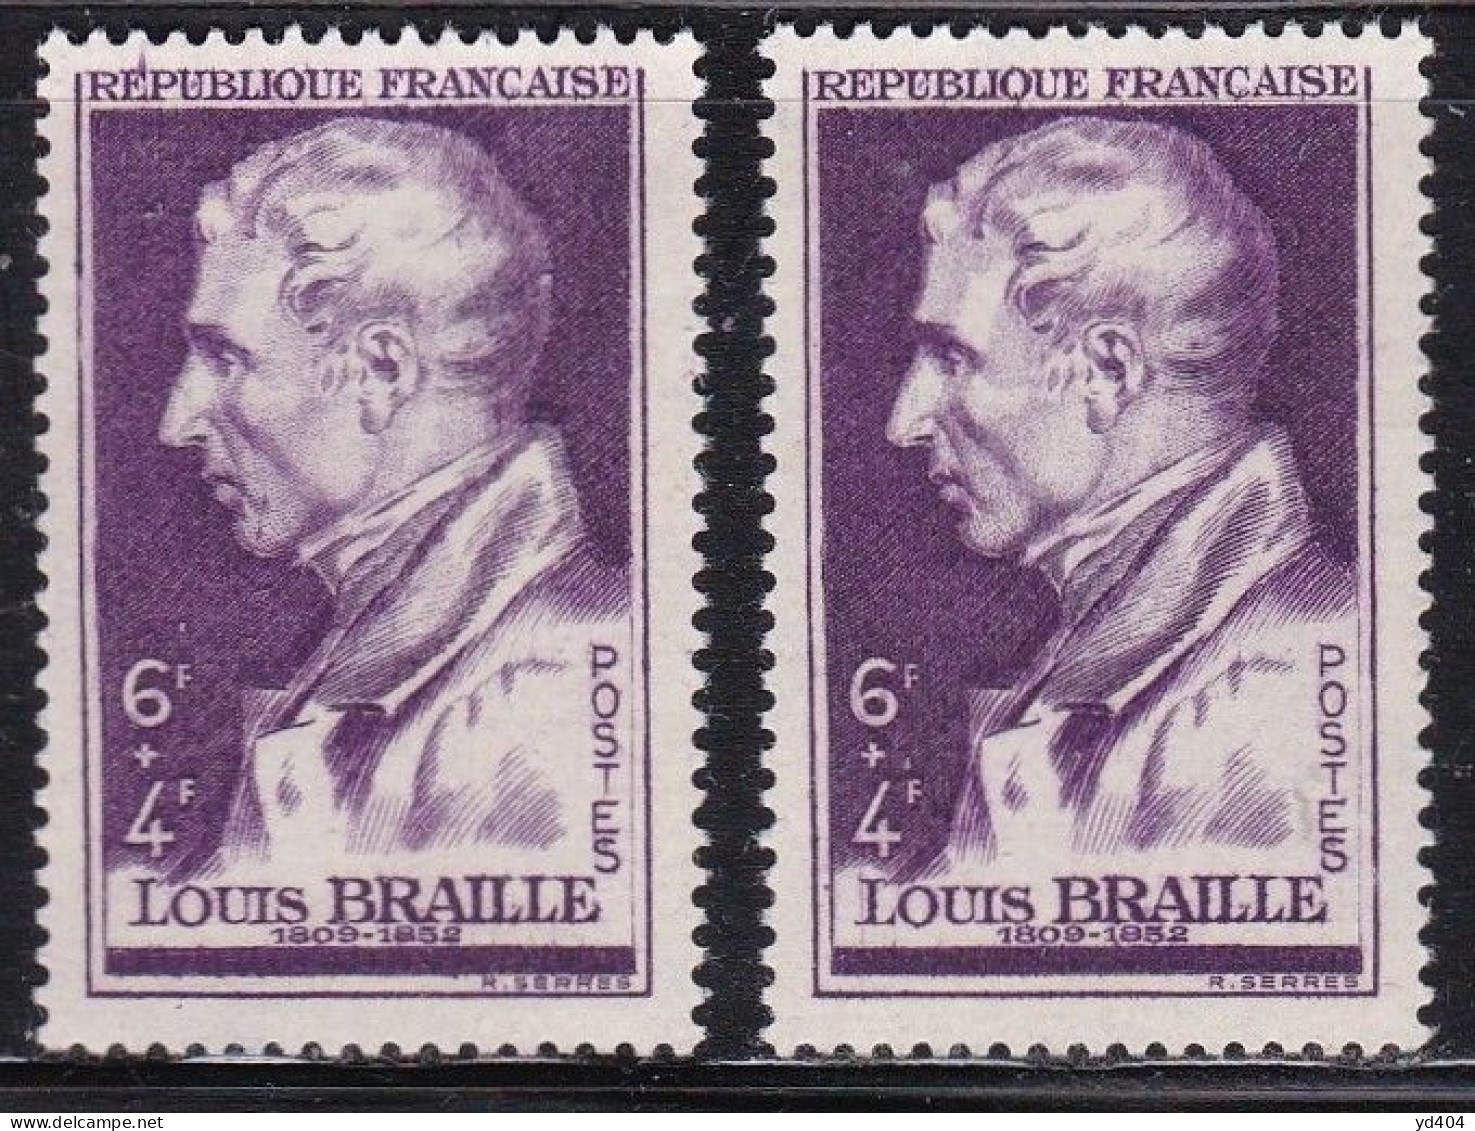 FR7143 - FRANCE – 1947 – L. BRAILLE - Y&T # 793(x2) MNH - Neufs